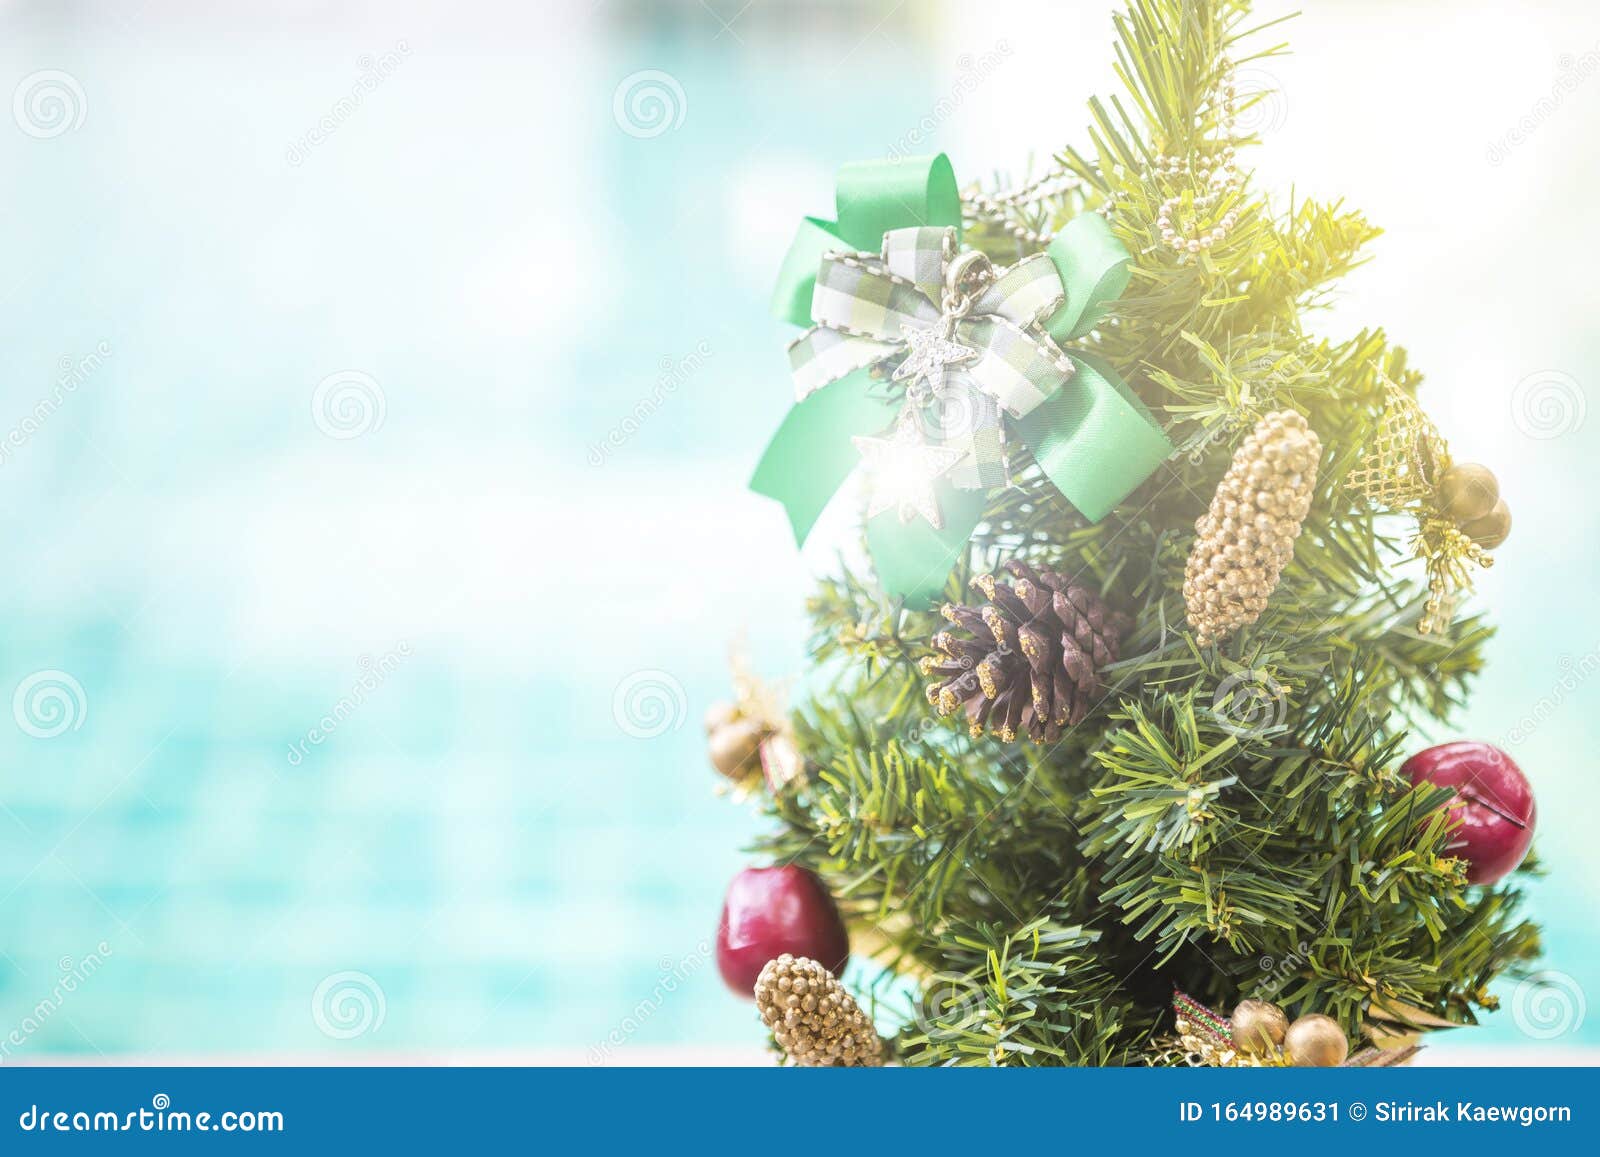 Nền cây thông Giáng sinh dưới nước xanh mờ sẽ mang đến cho bạn một cảnh vật hữu tình và đầy màu sắc. Với những chiếc đèn lung linh và những cánh hoa tuyệt đẹp, bạn sẽ trở nên lung linh và rực rỡ hơn khi chụp ảnh trong không khí Noel.